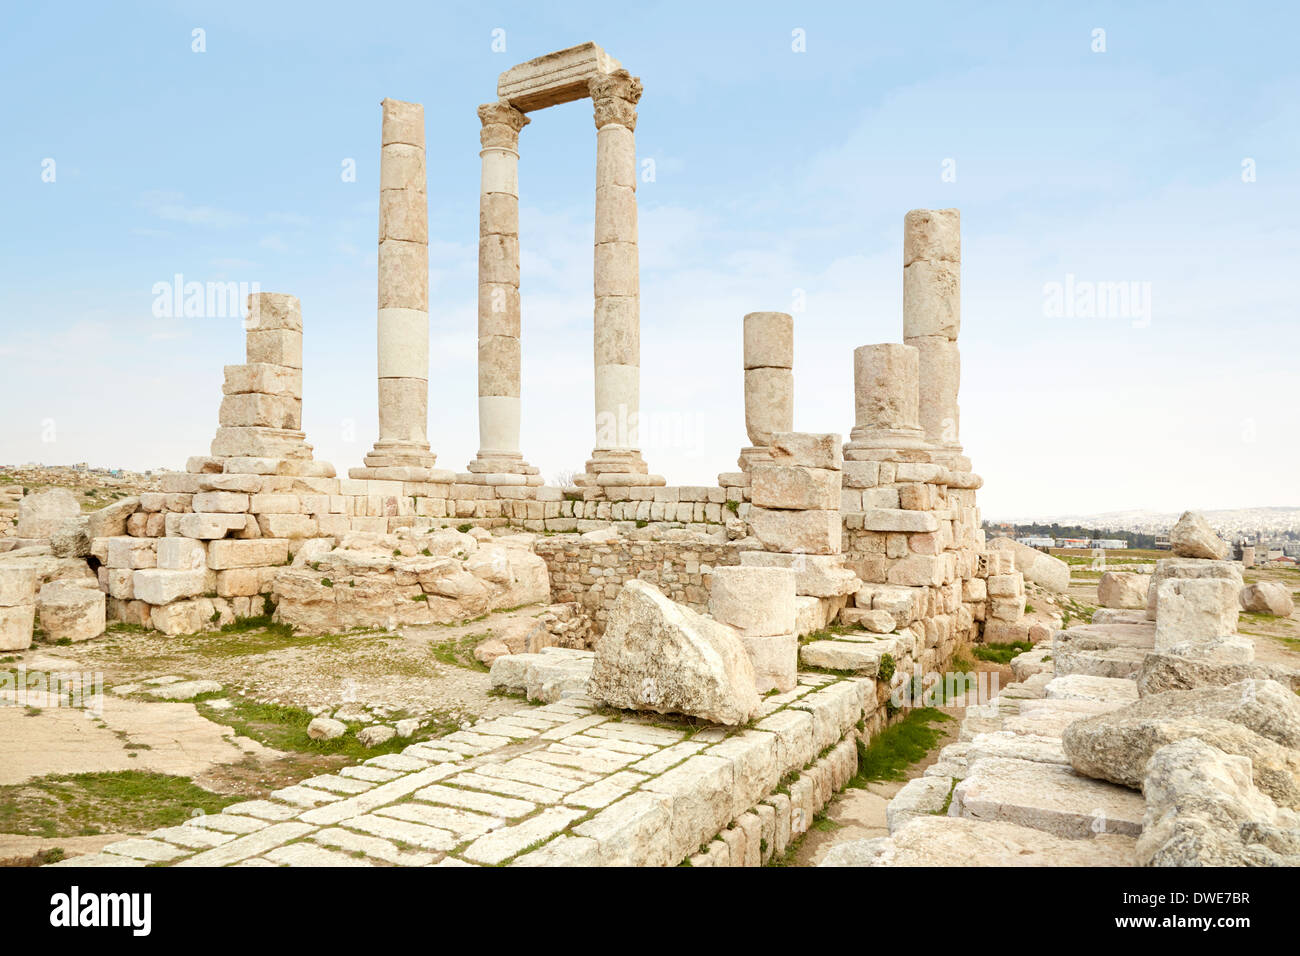 Temple of Hercules on the Amman citadel, Jordan Stock Photo